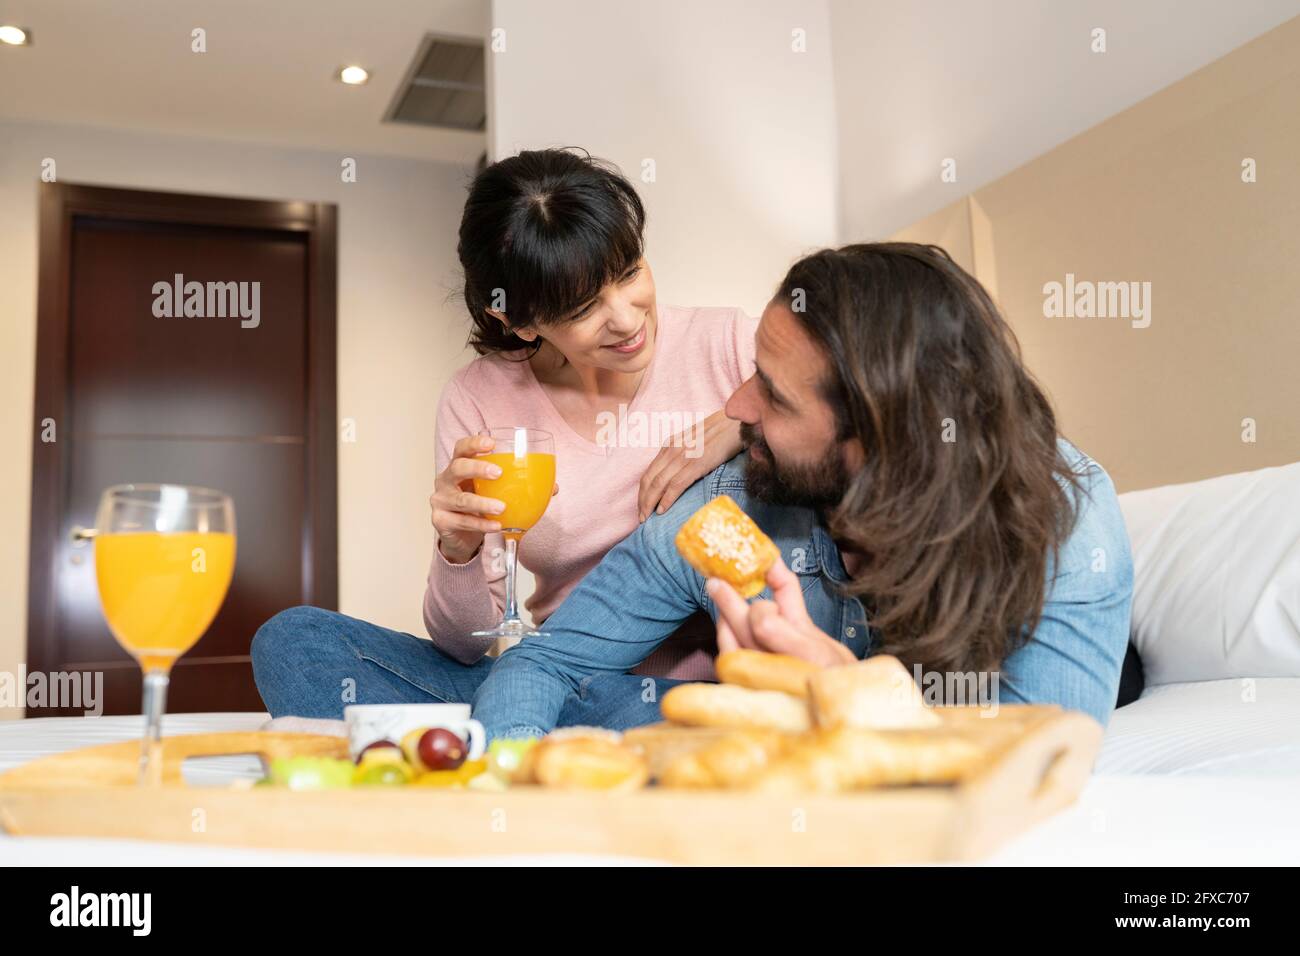 Lächelndes Paar, das sich beim Frühstück auf dem Bett in der Hotelsuite ansah Stockfoto